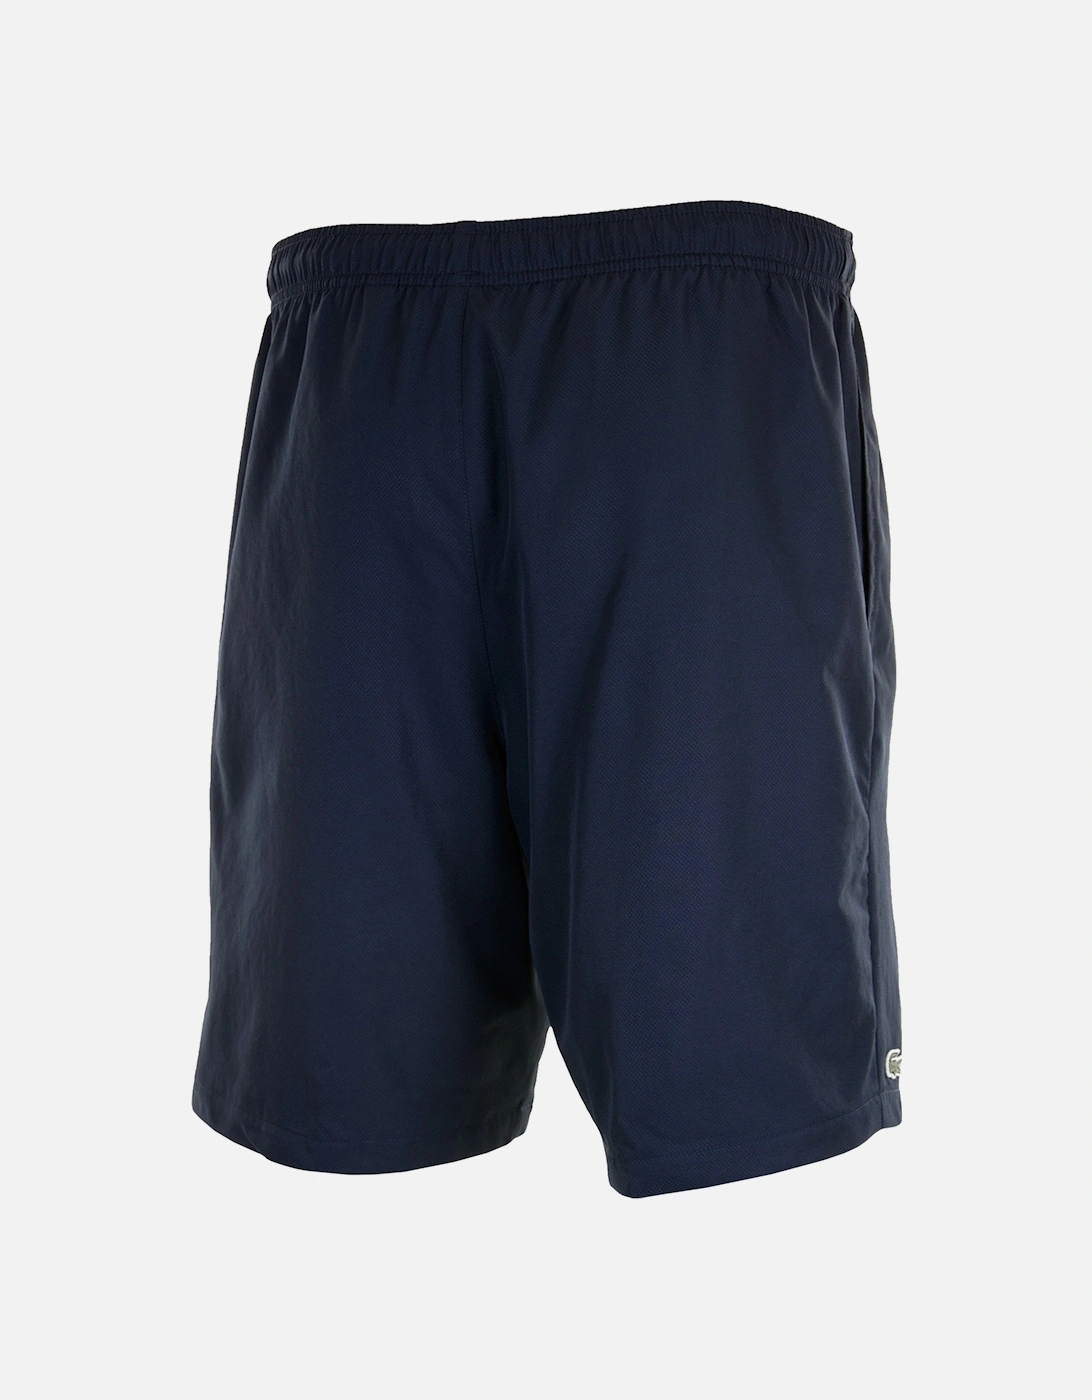 Sport Mens Shorts (Navy)